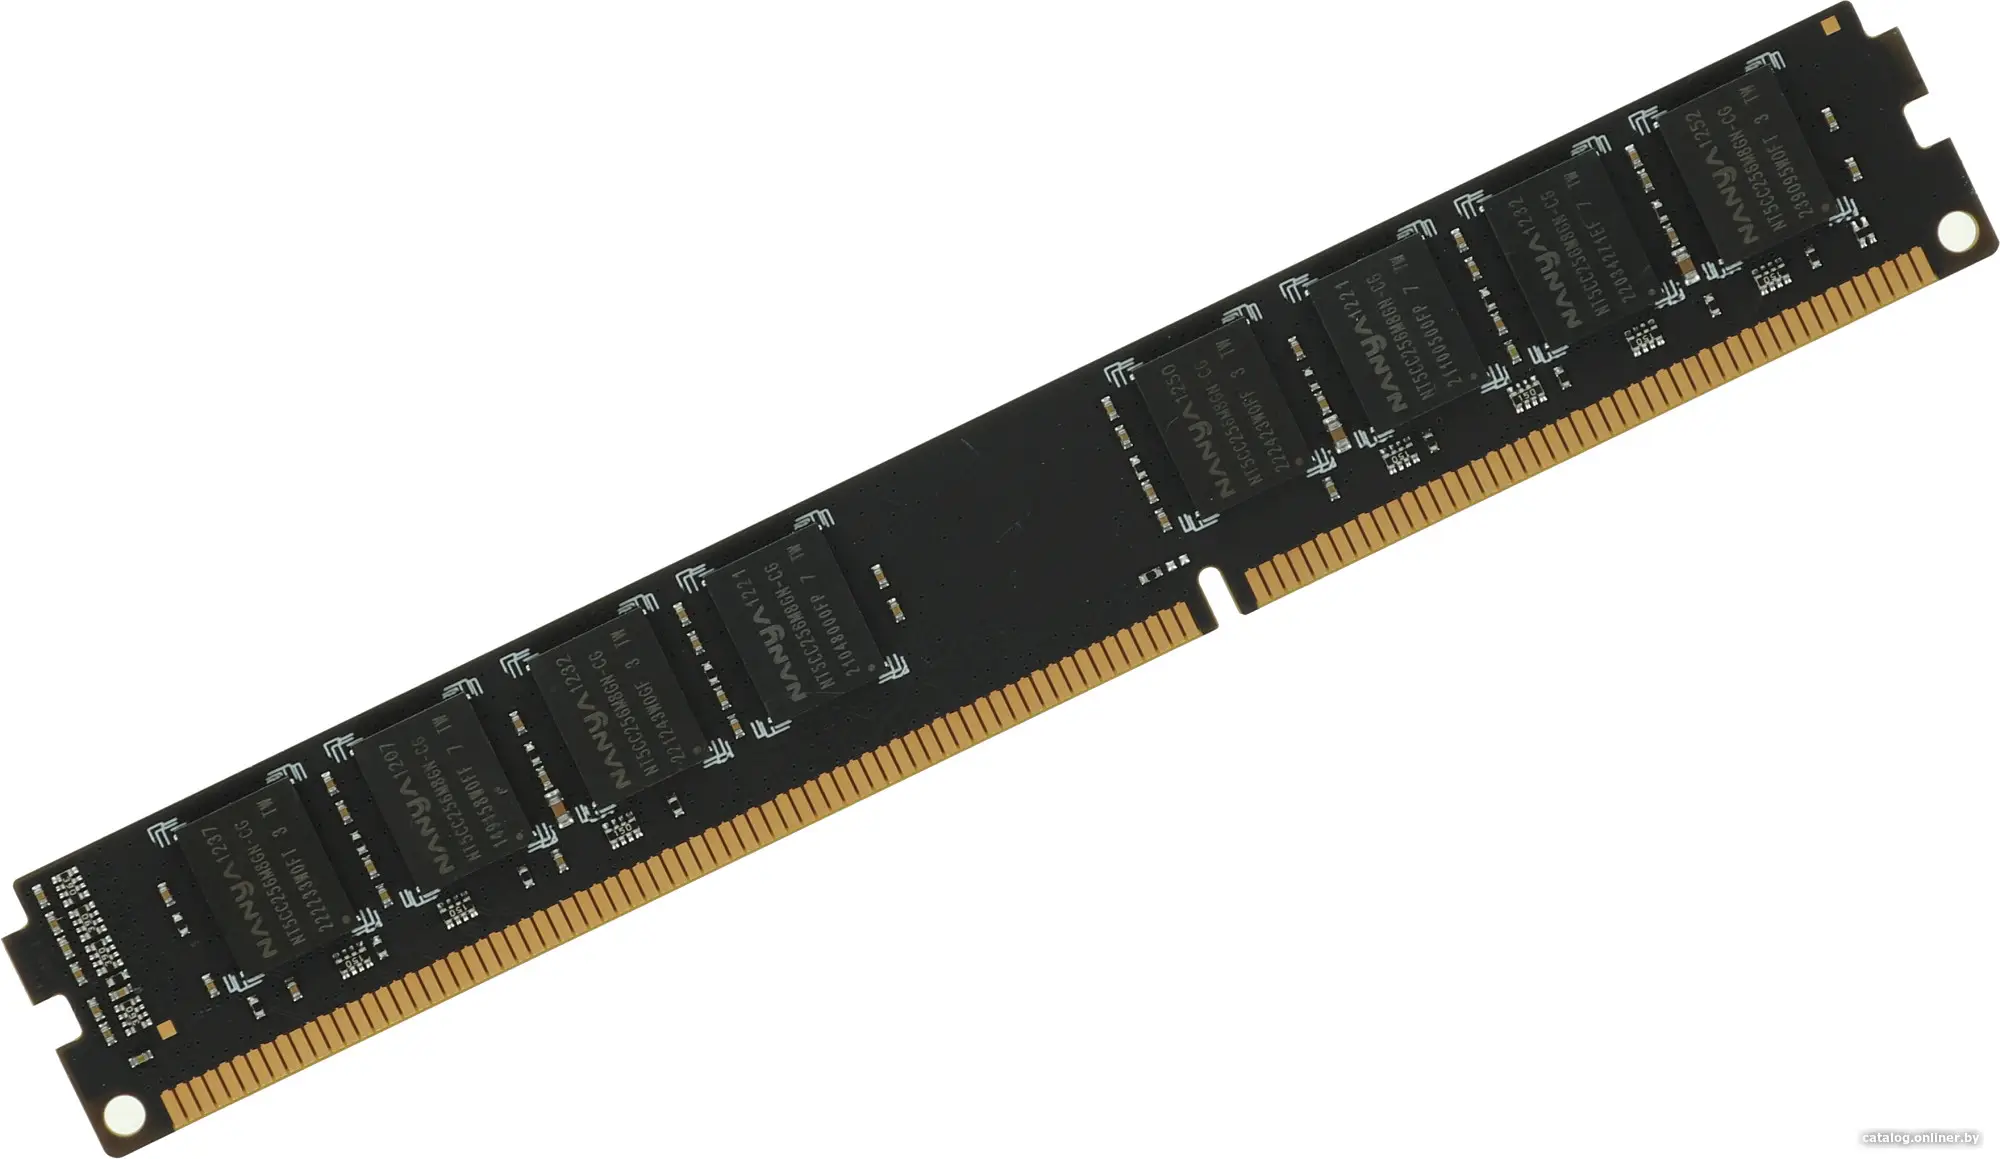 Купить Оперативная память Digma 4ГБ DDR3 1333 МГц DGMAD31333004D, цена, опт и розница